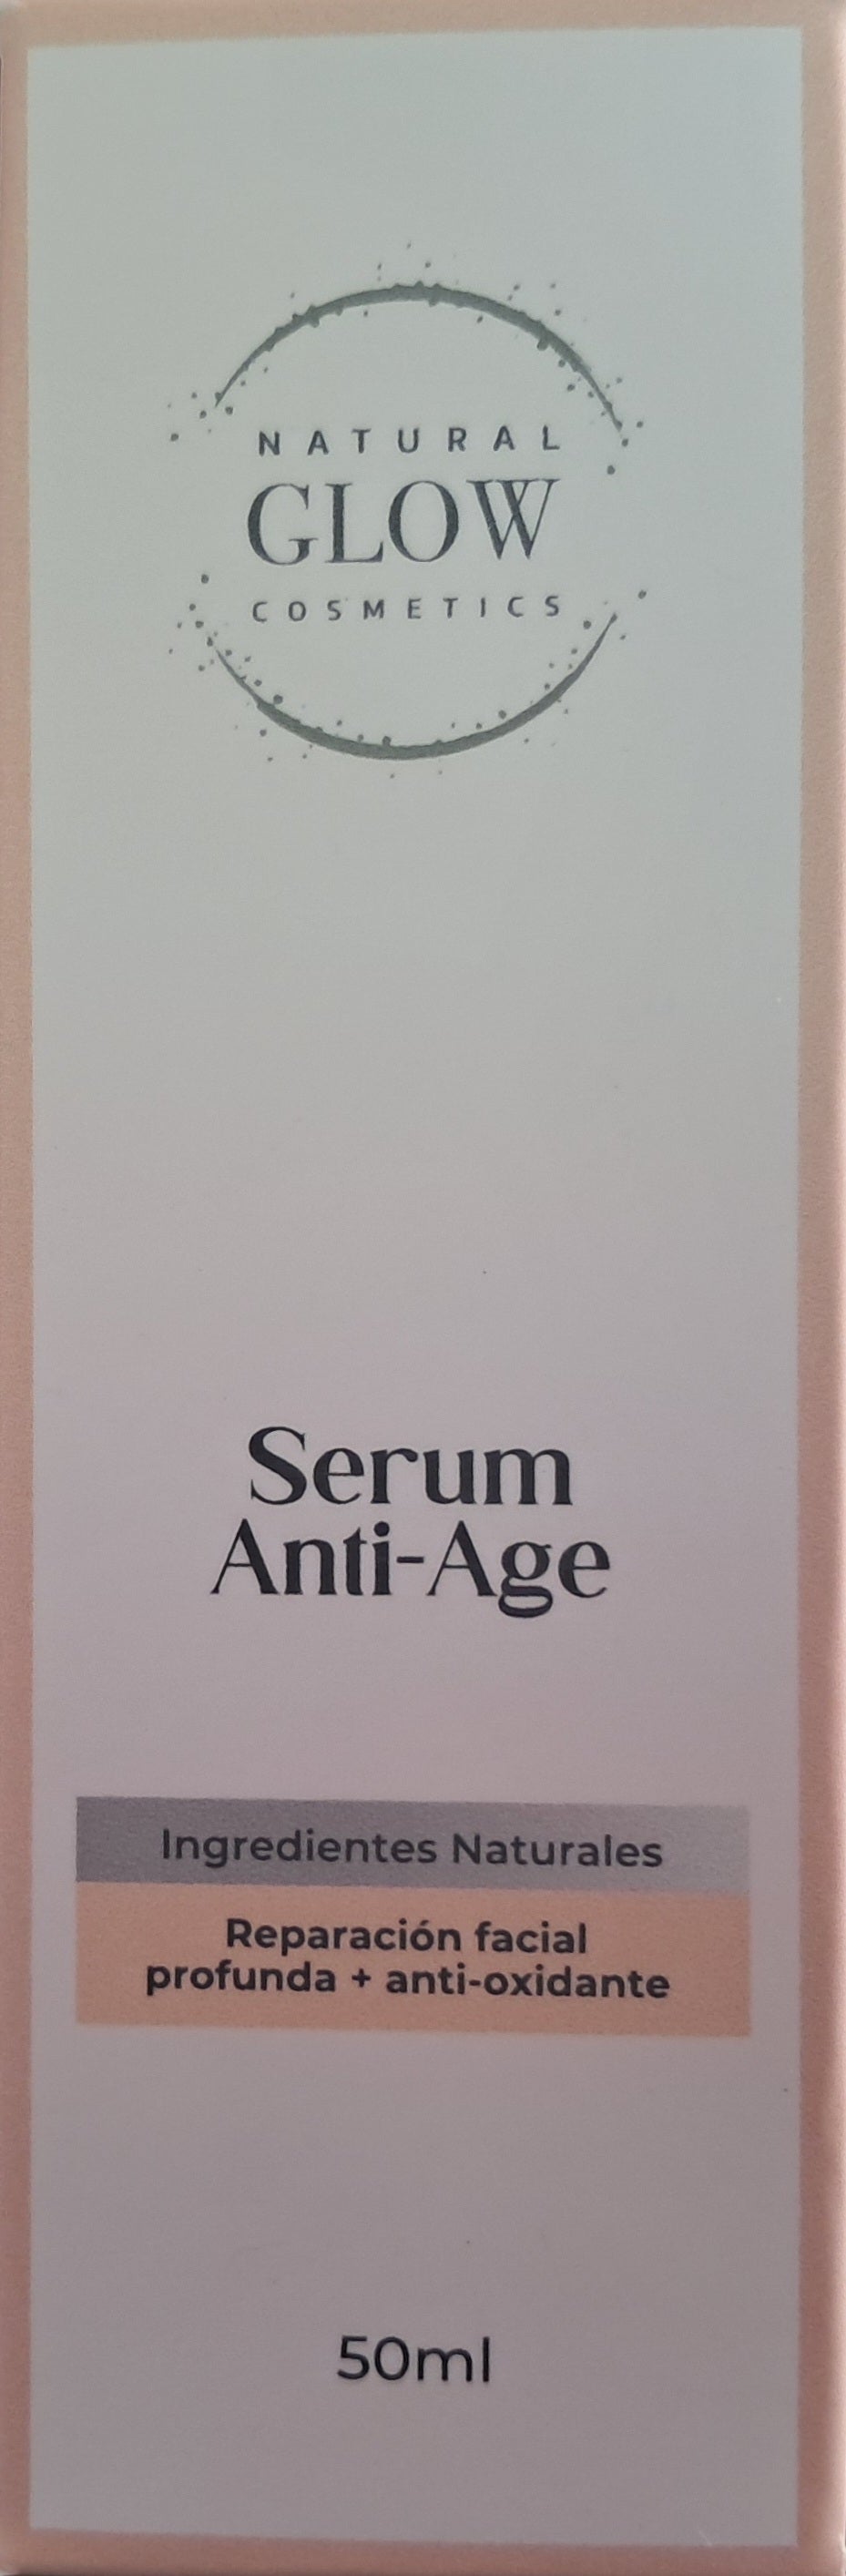 Serum Anti-Edad